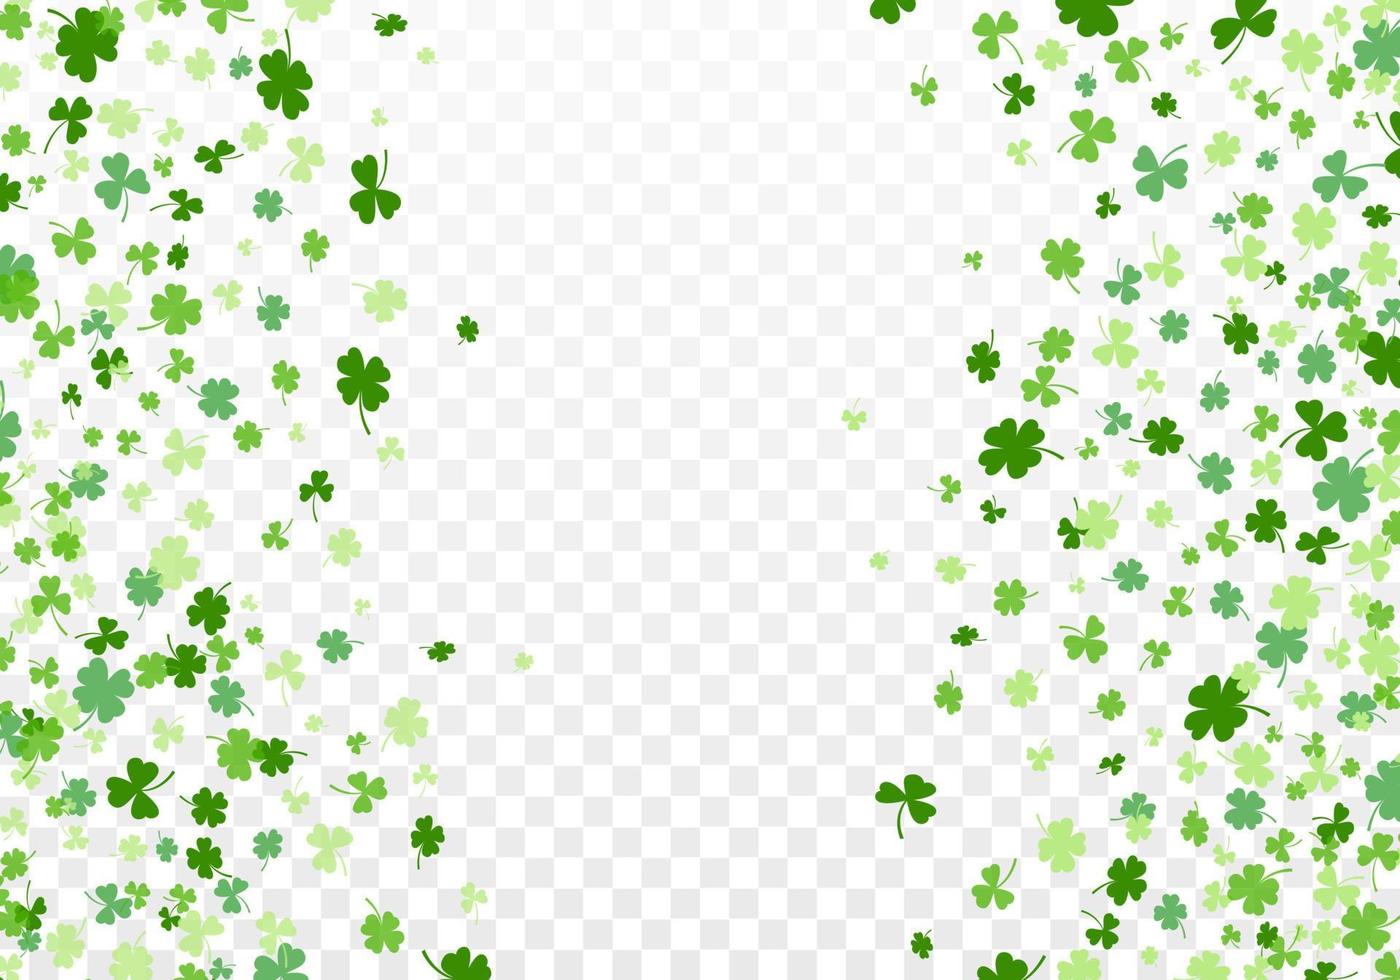 Shamrock or clover leaves flat design green backdrop pattern vector illustration